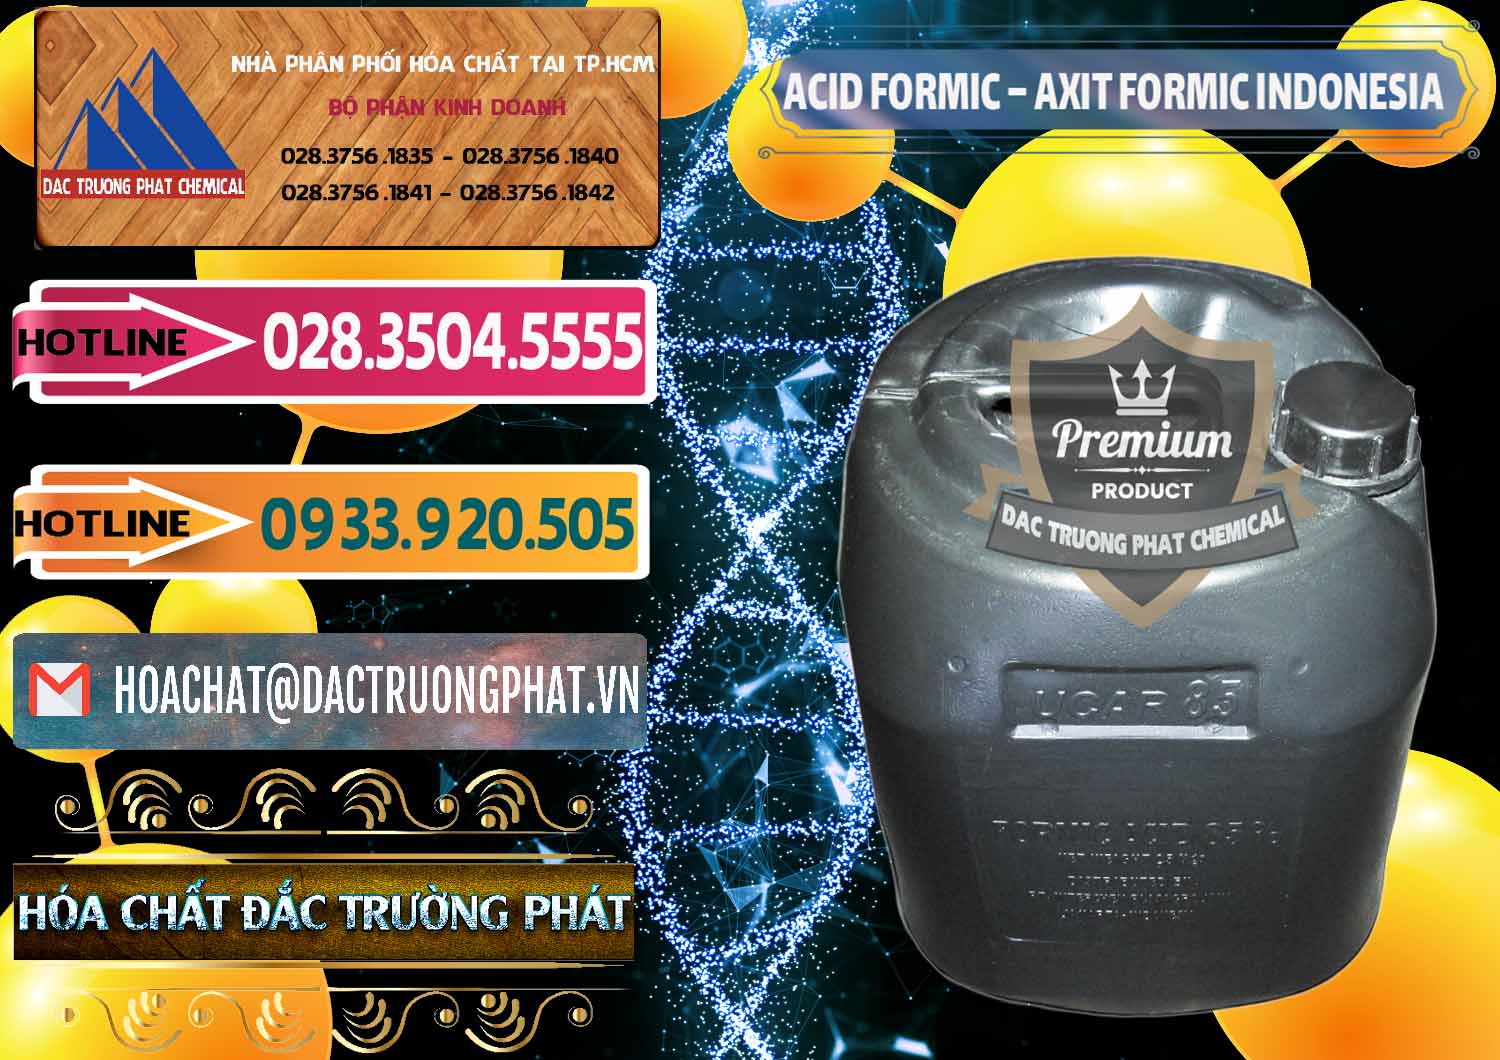 Cty chuyên bán và phân phối Acid Formic - Axit Formic Indonesia - 0026 - Công ty chuyên kinh doanh ( cung cấp ) hóa chất tại TP.HCM - dactruongphat.vn